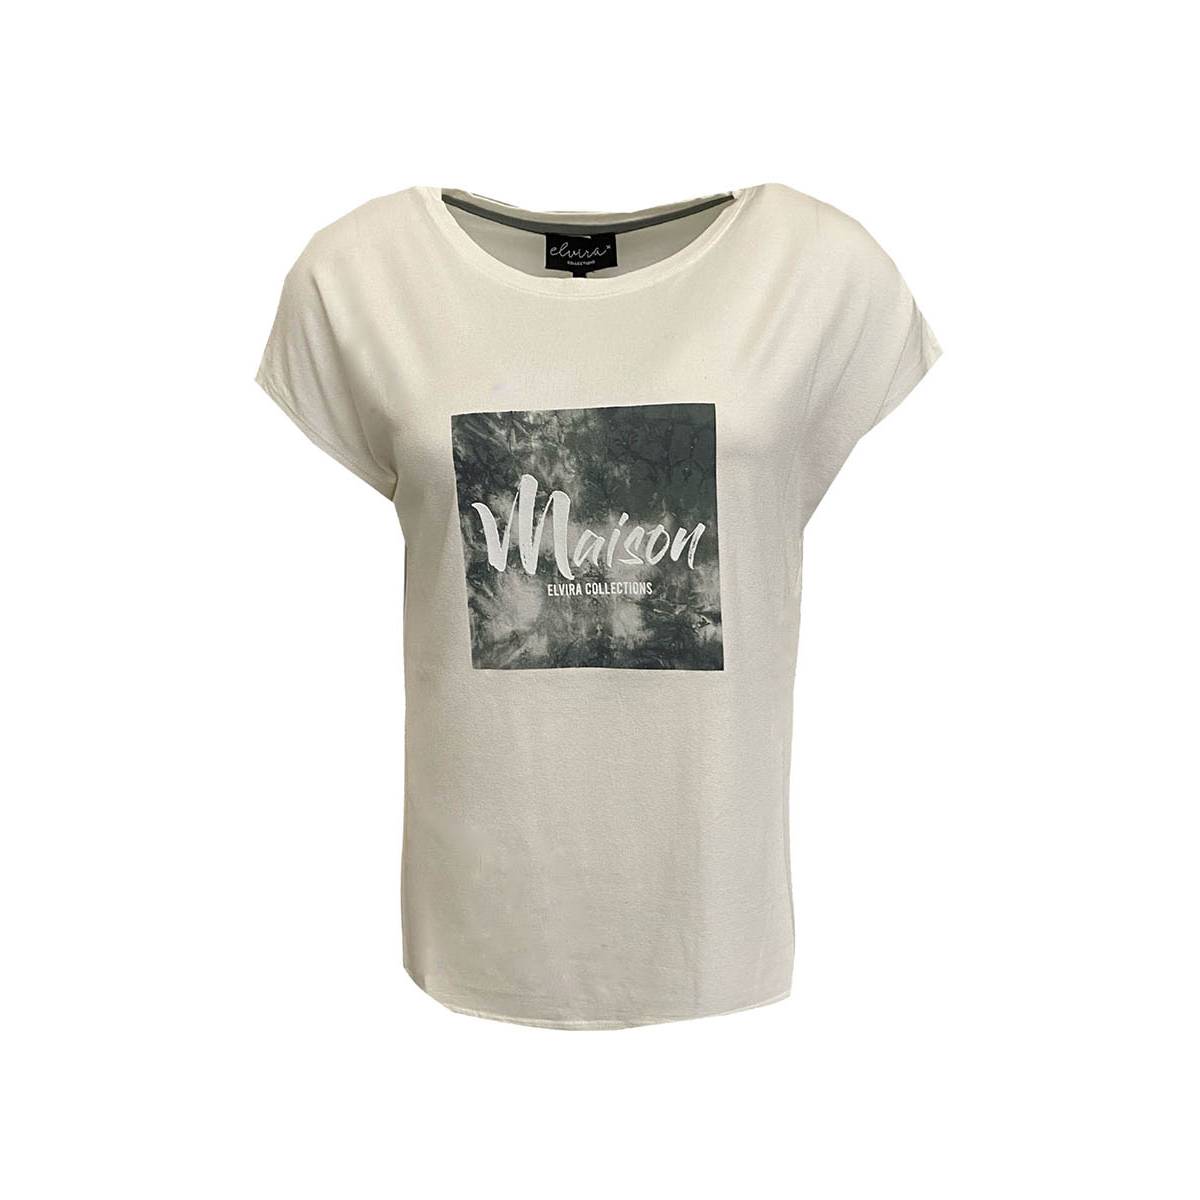 ELVIRA CASUALS E1 22-001 T-shirt Manon Wit